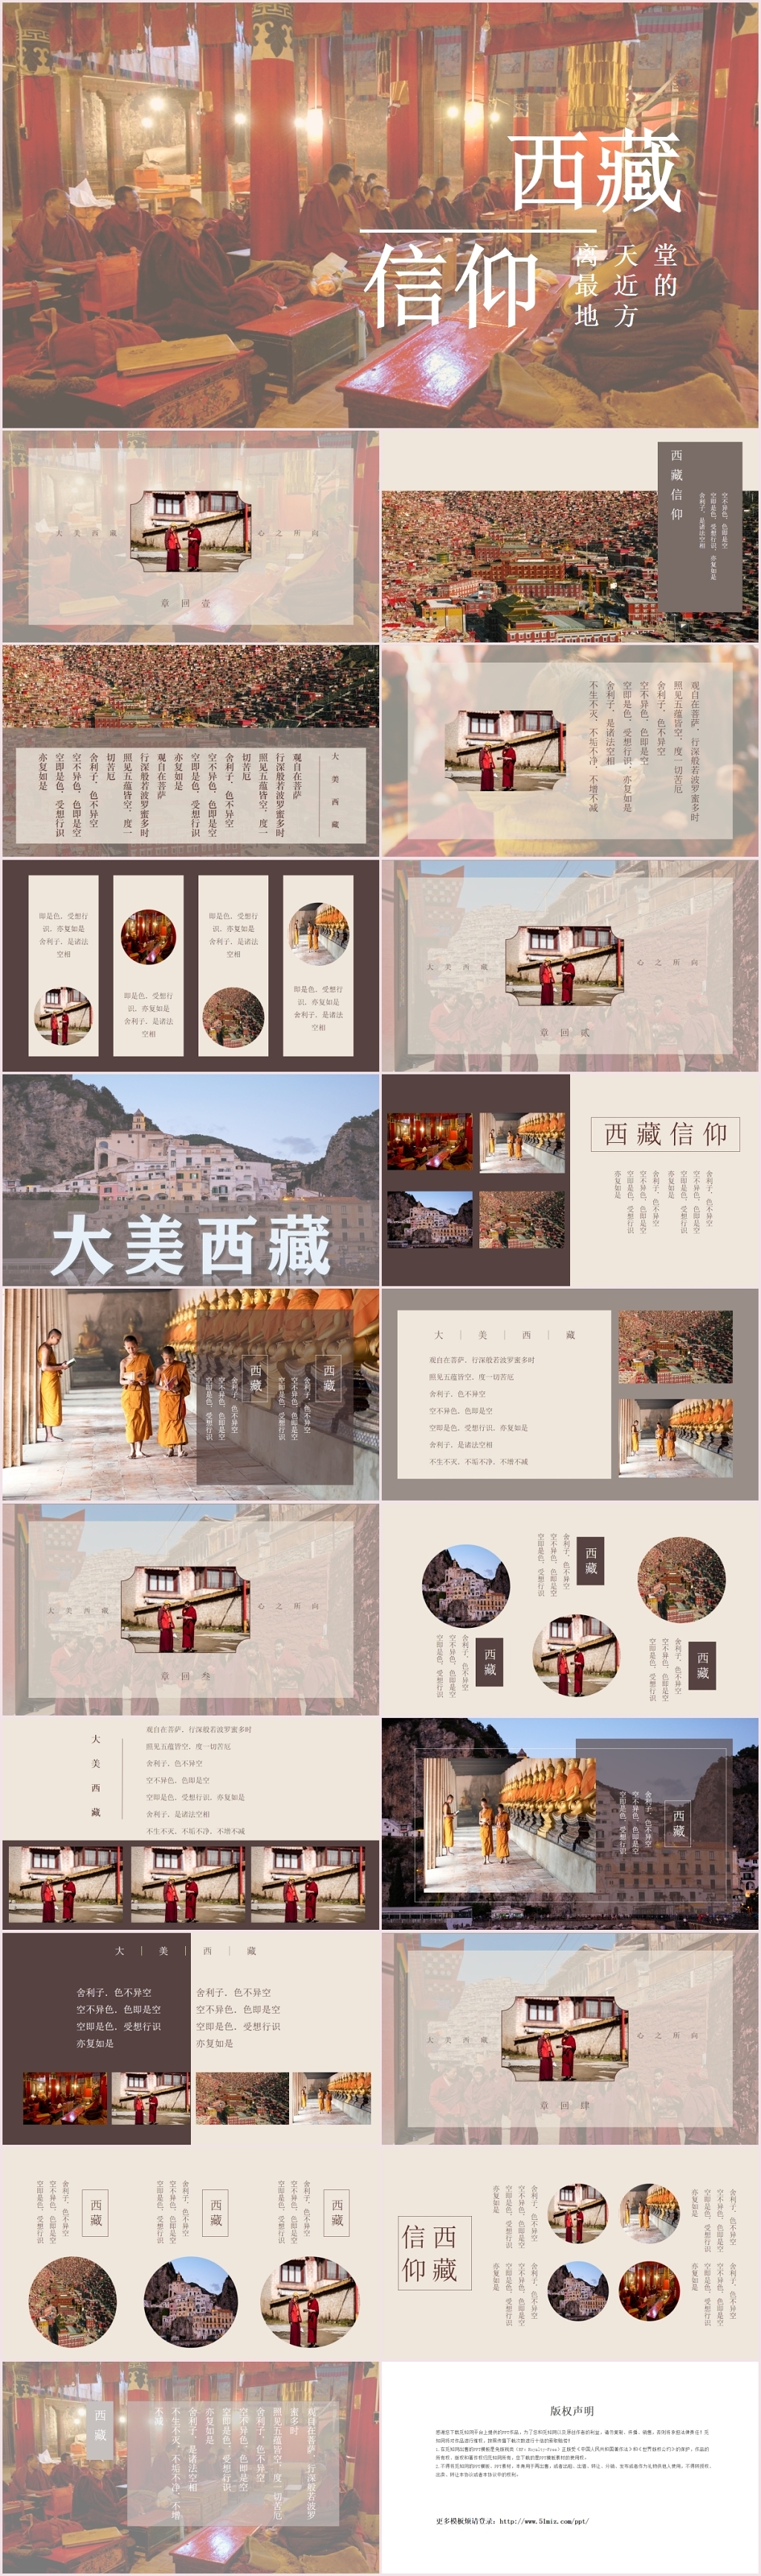 中国风文艺西藏旅游相册旅行宣传PPT模板西藏信仰